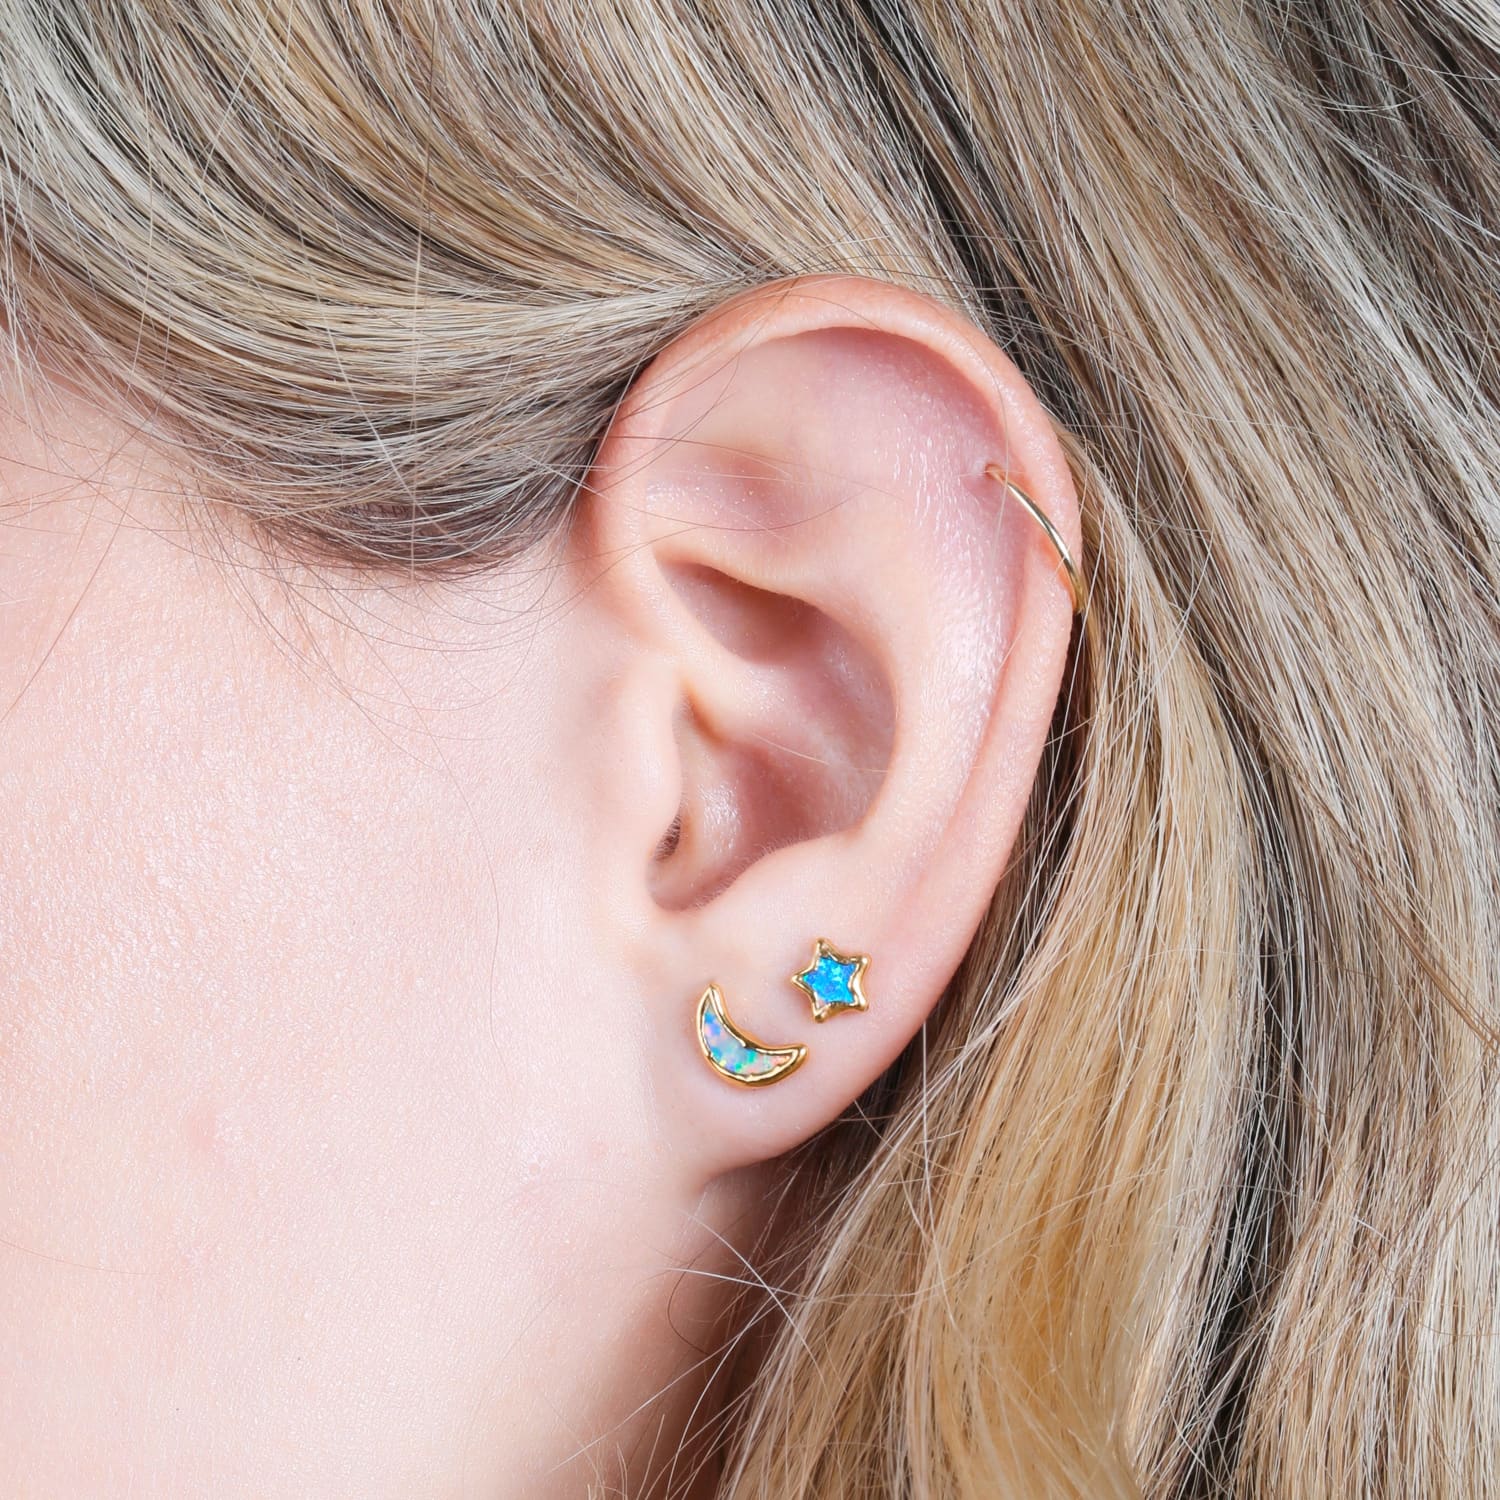 Moon Kyocera Opal Stud Earrings Raw Gemstone Jewelry Rough